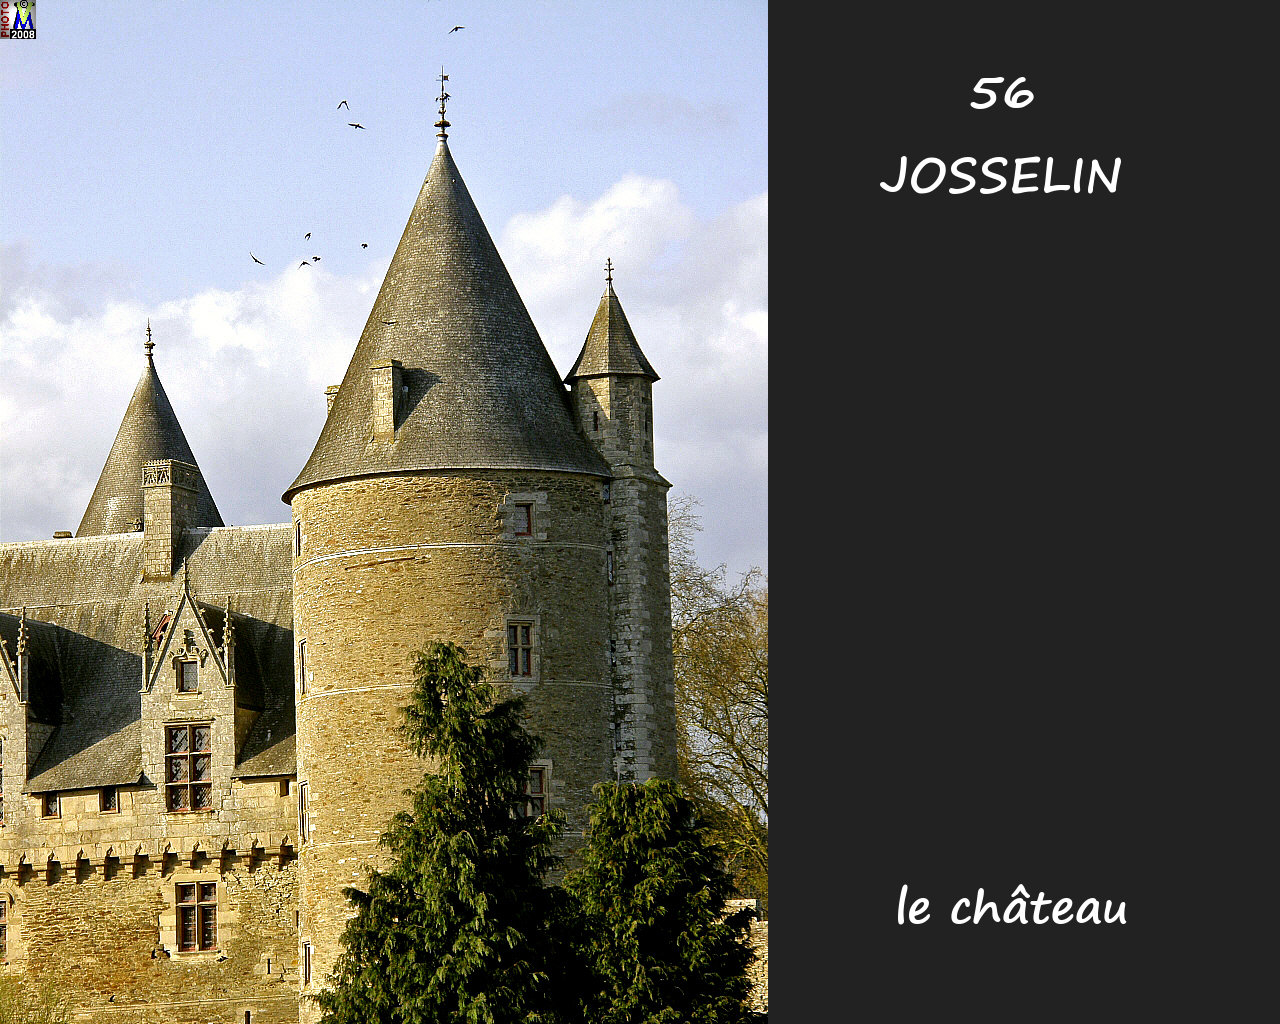 56JOSSELIN_chateau_122.jpg